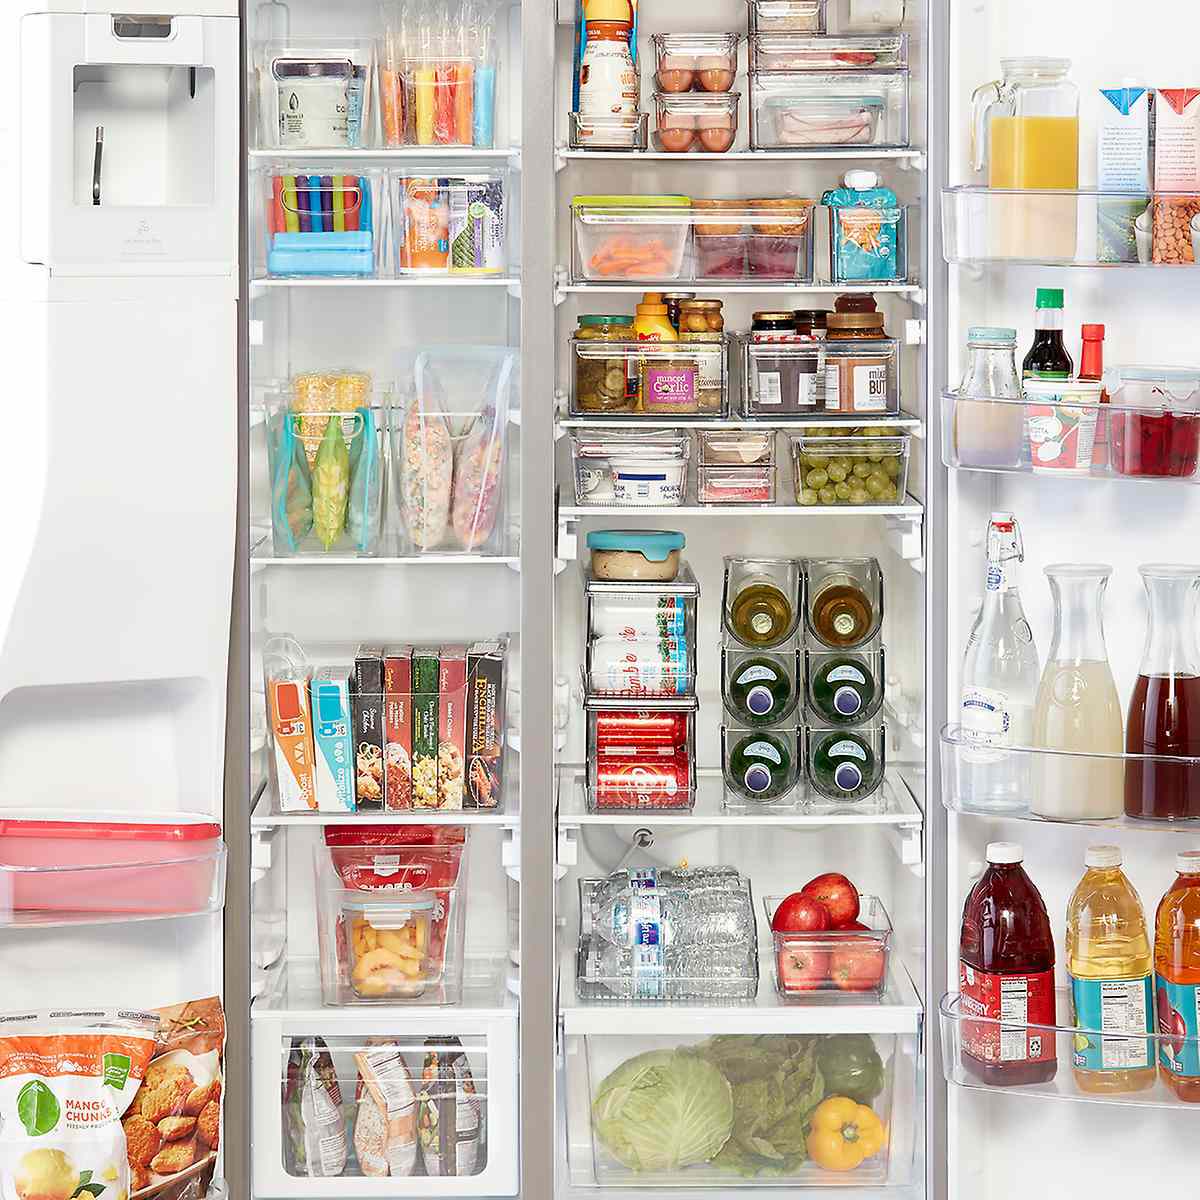 Best Refrigerator Food Storage, Shelves Around Refrigerator